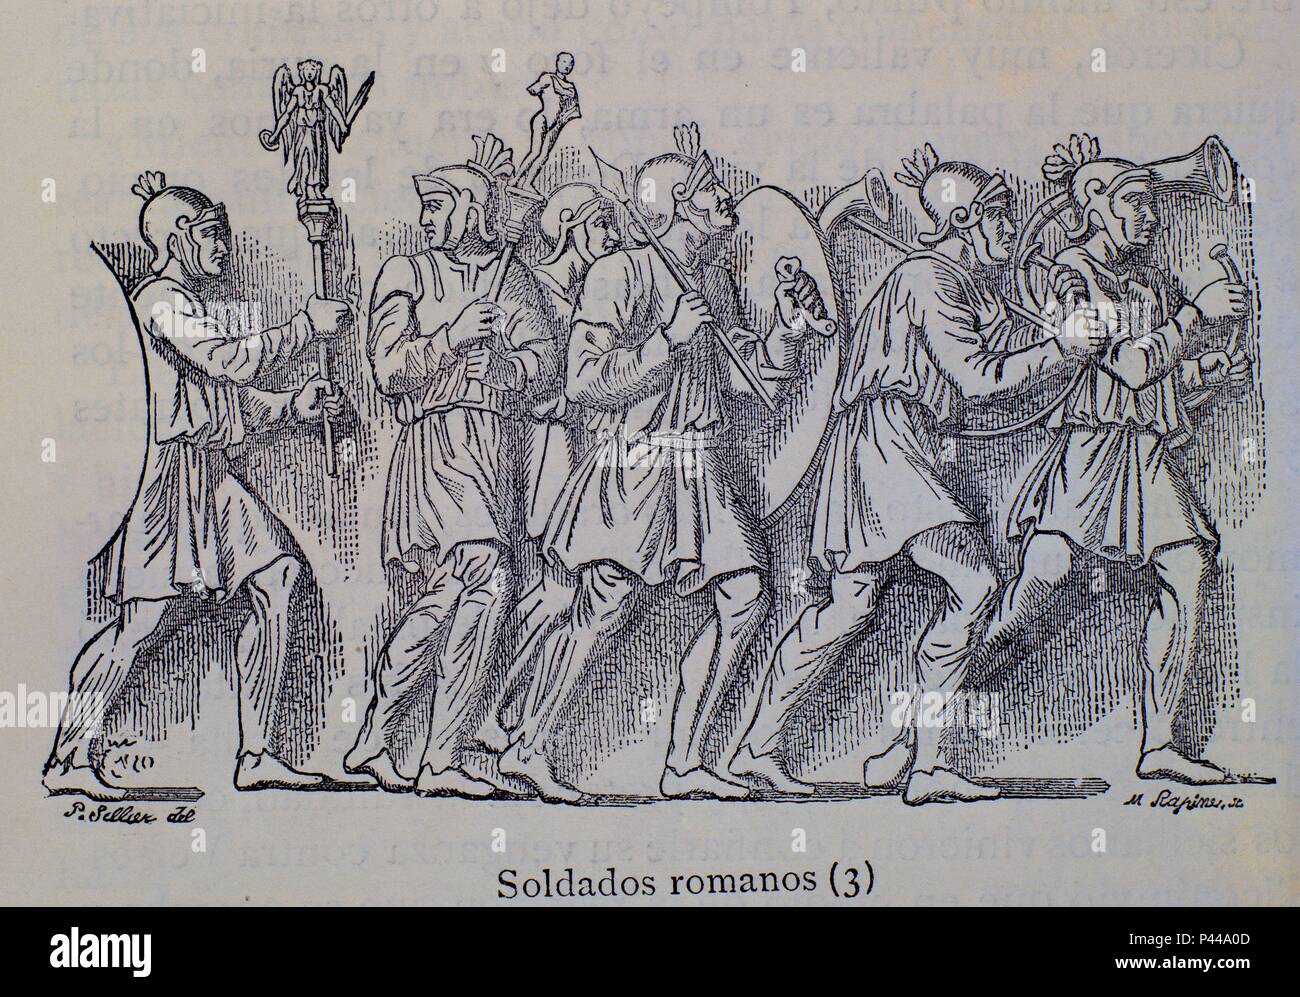 SOLDADOS ROMANOS. Location: BIBLIOTECA NACIONAL-COLECCION, MADRID, SPAIN. Stock Photo